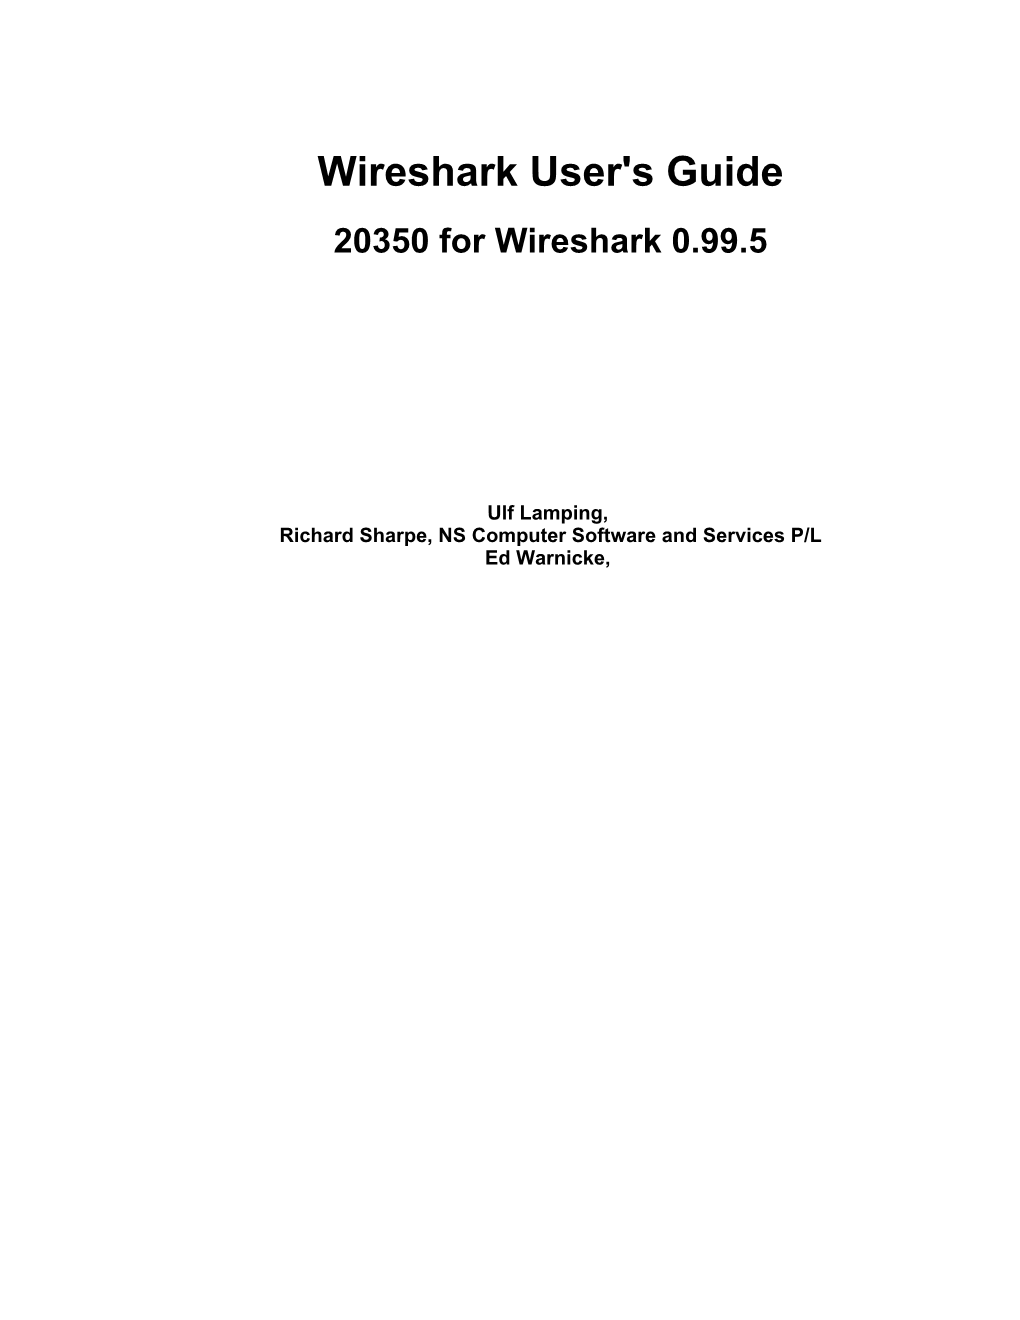 Wireshark User's Guide 20350 for Wireshark 0.99.5